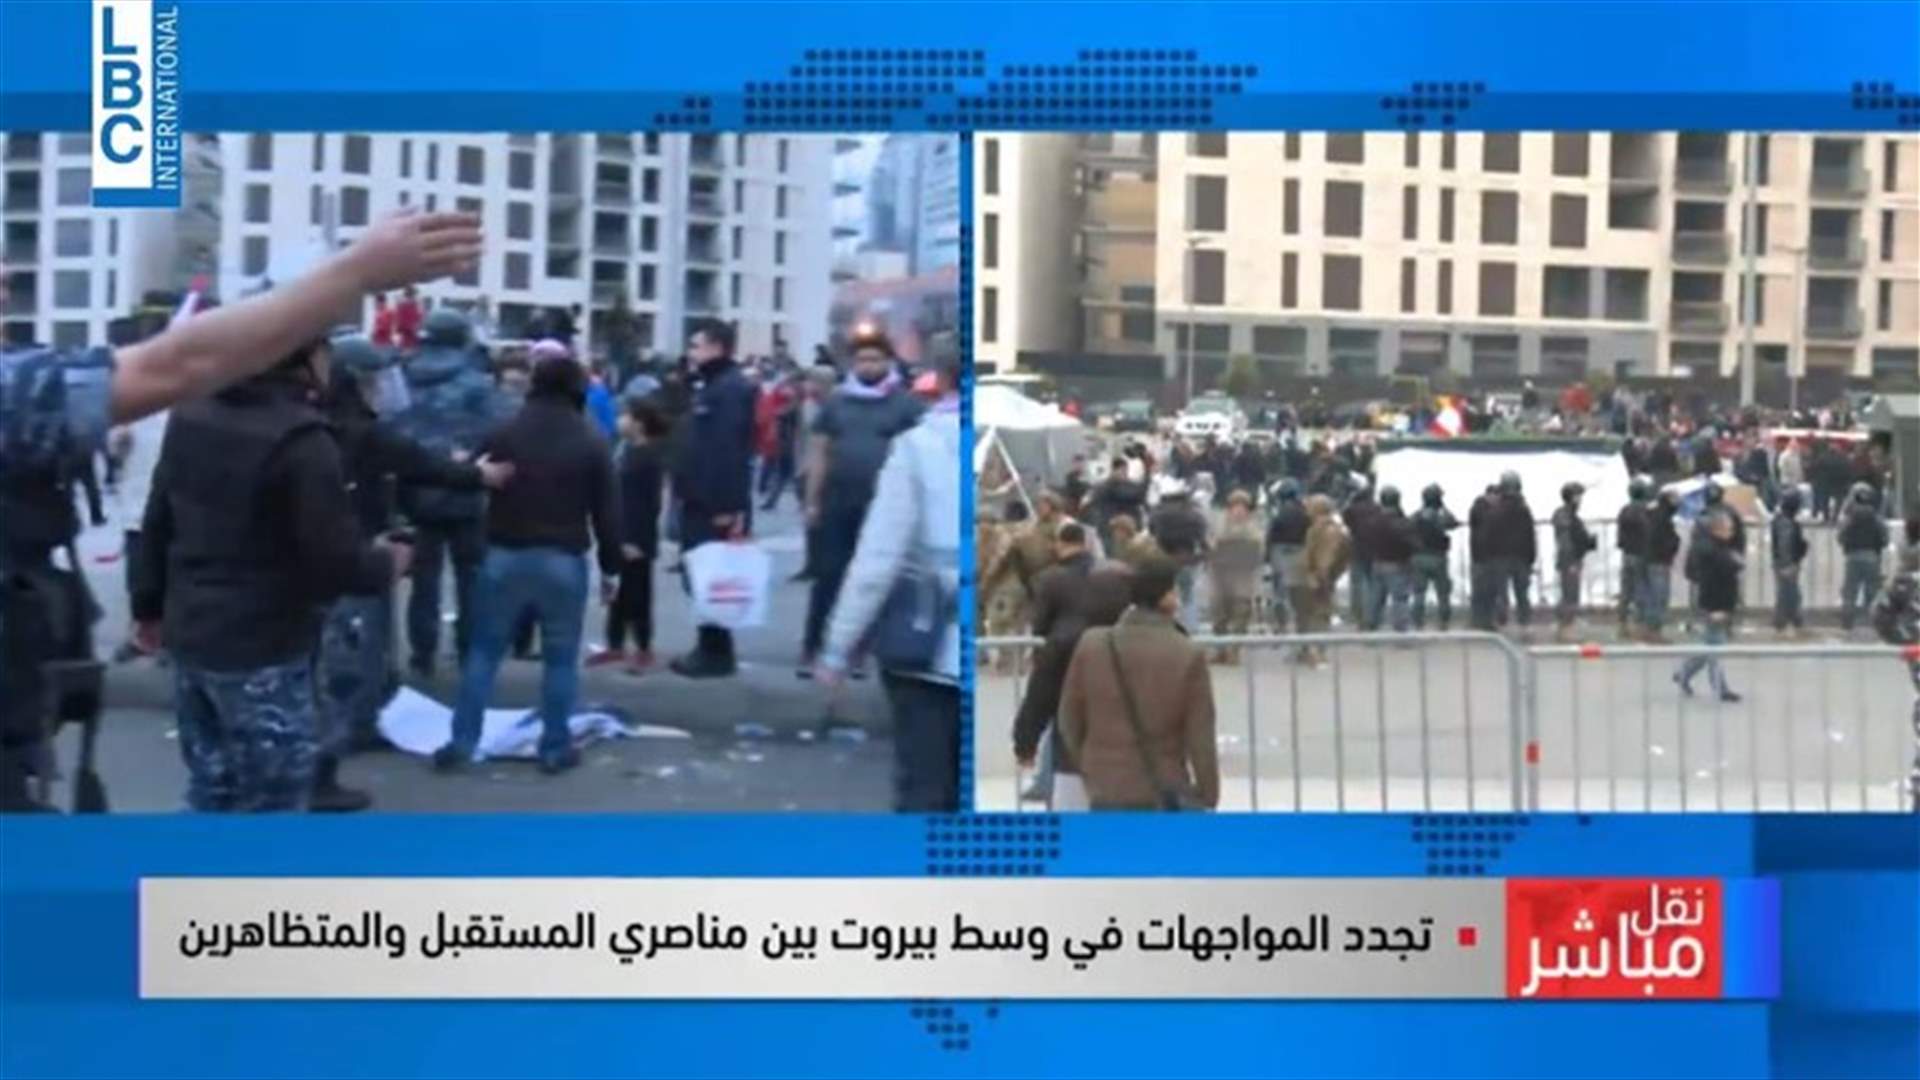 تجدد المواجهات بين مناصري المستقبل والمتظاهرين في وسط بيروت (فيديو)